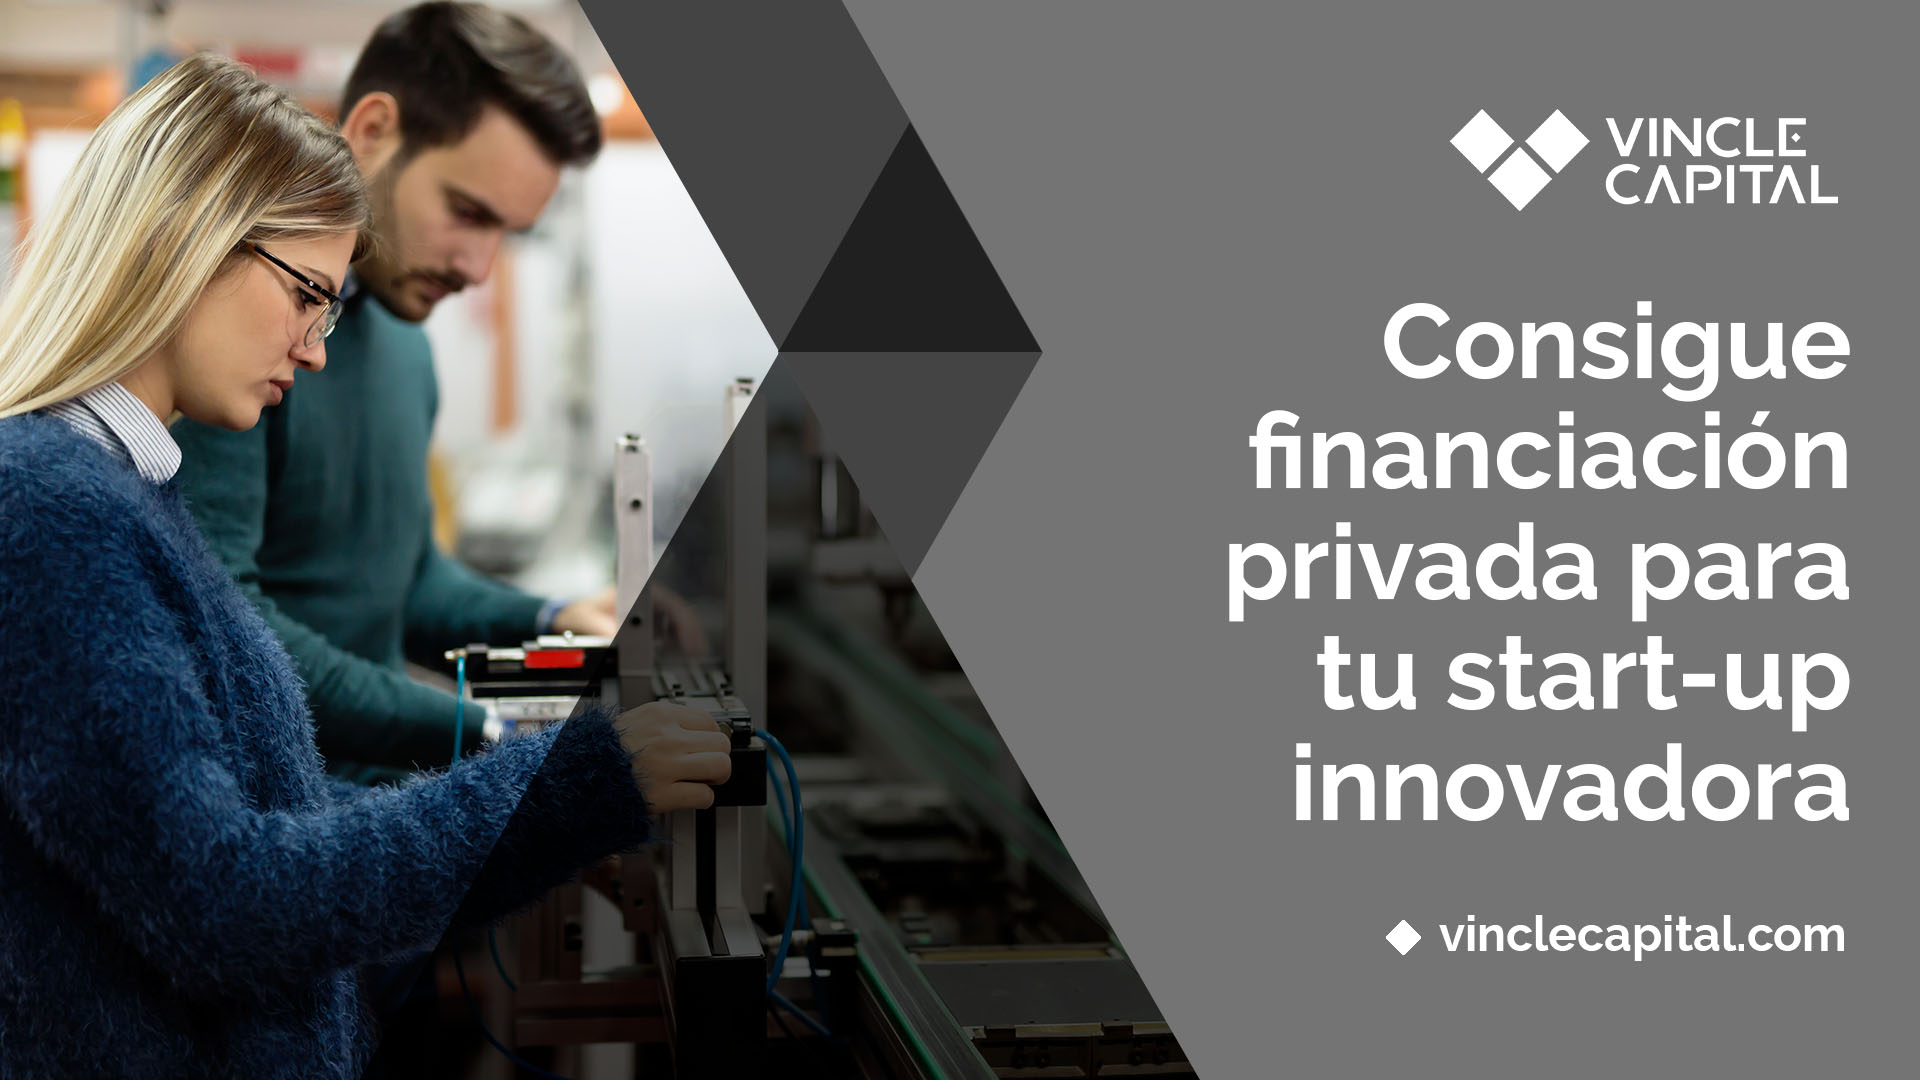 Llamamiento a empresas que necesitan financiar proyectos innovadores: el club de inversores Vincle Capital lanza una nueva convocatoria